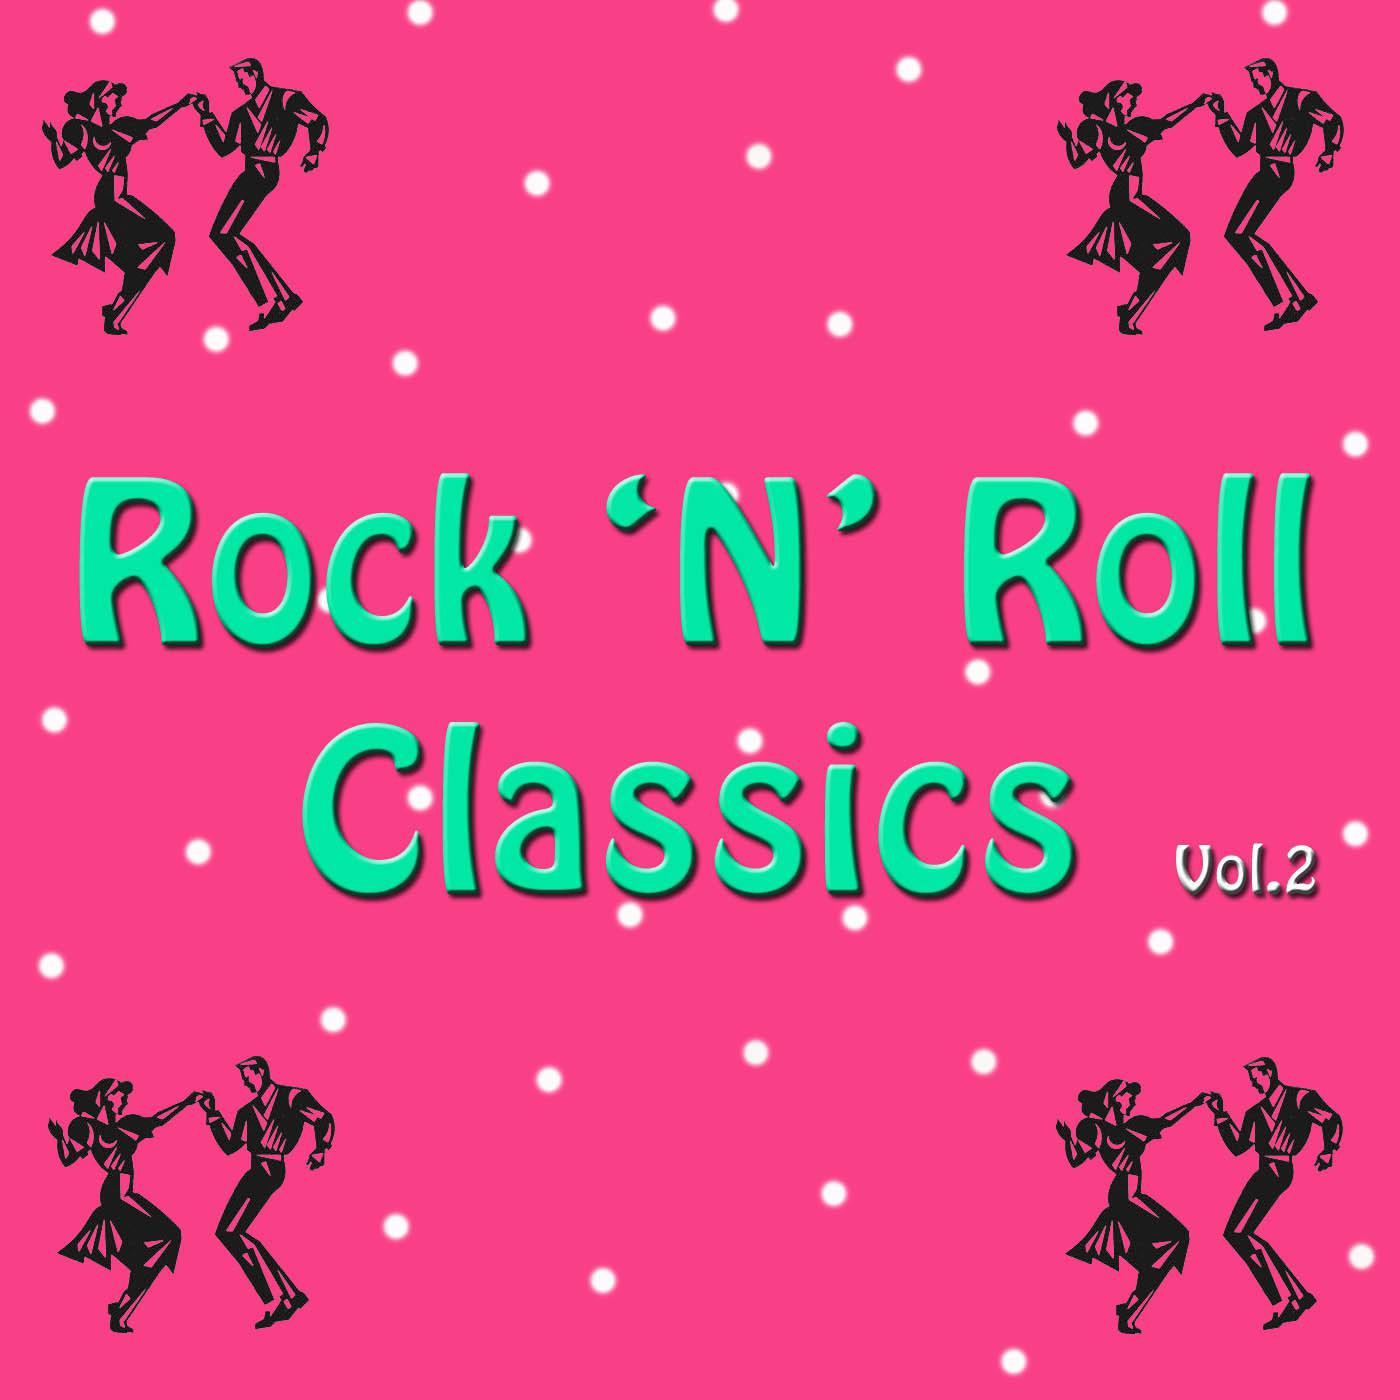 Rock 'n' Roll Classics Vol. 2